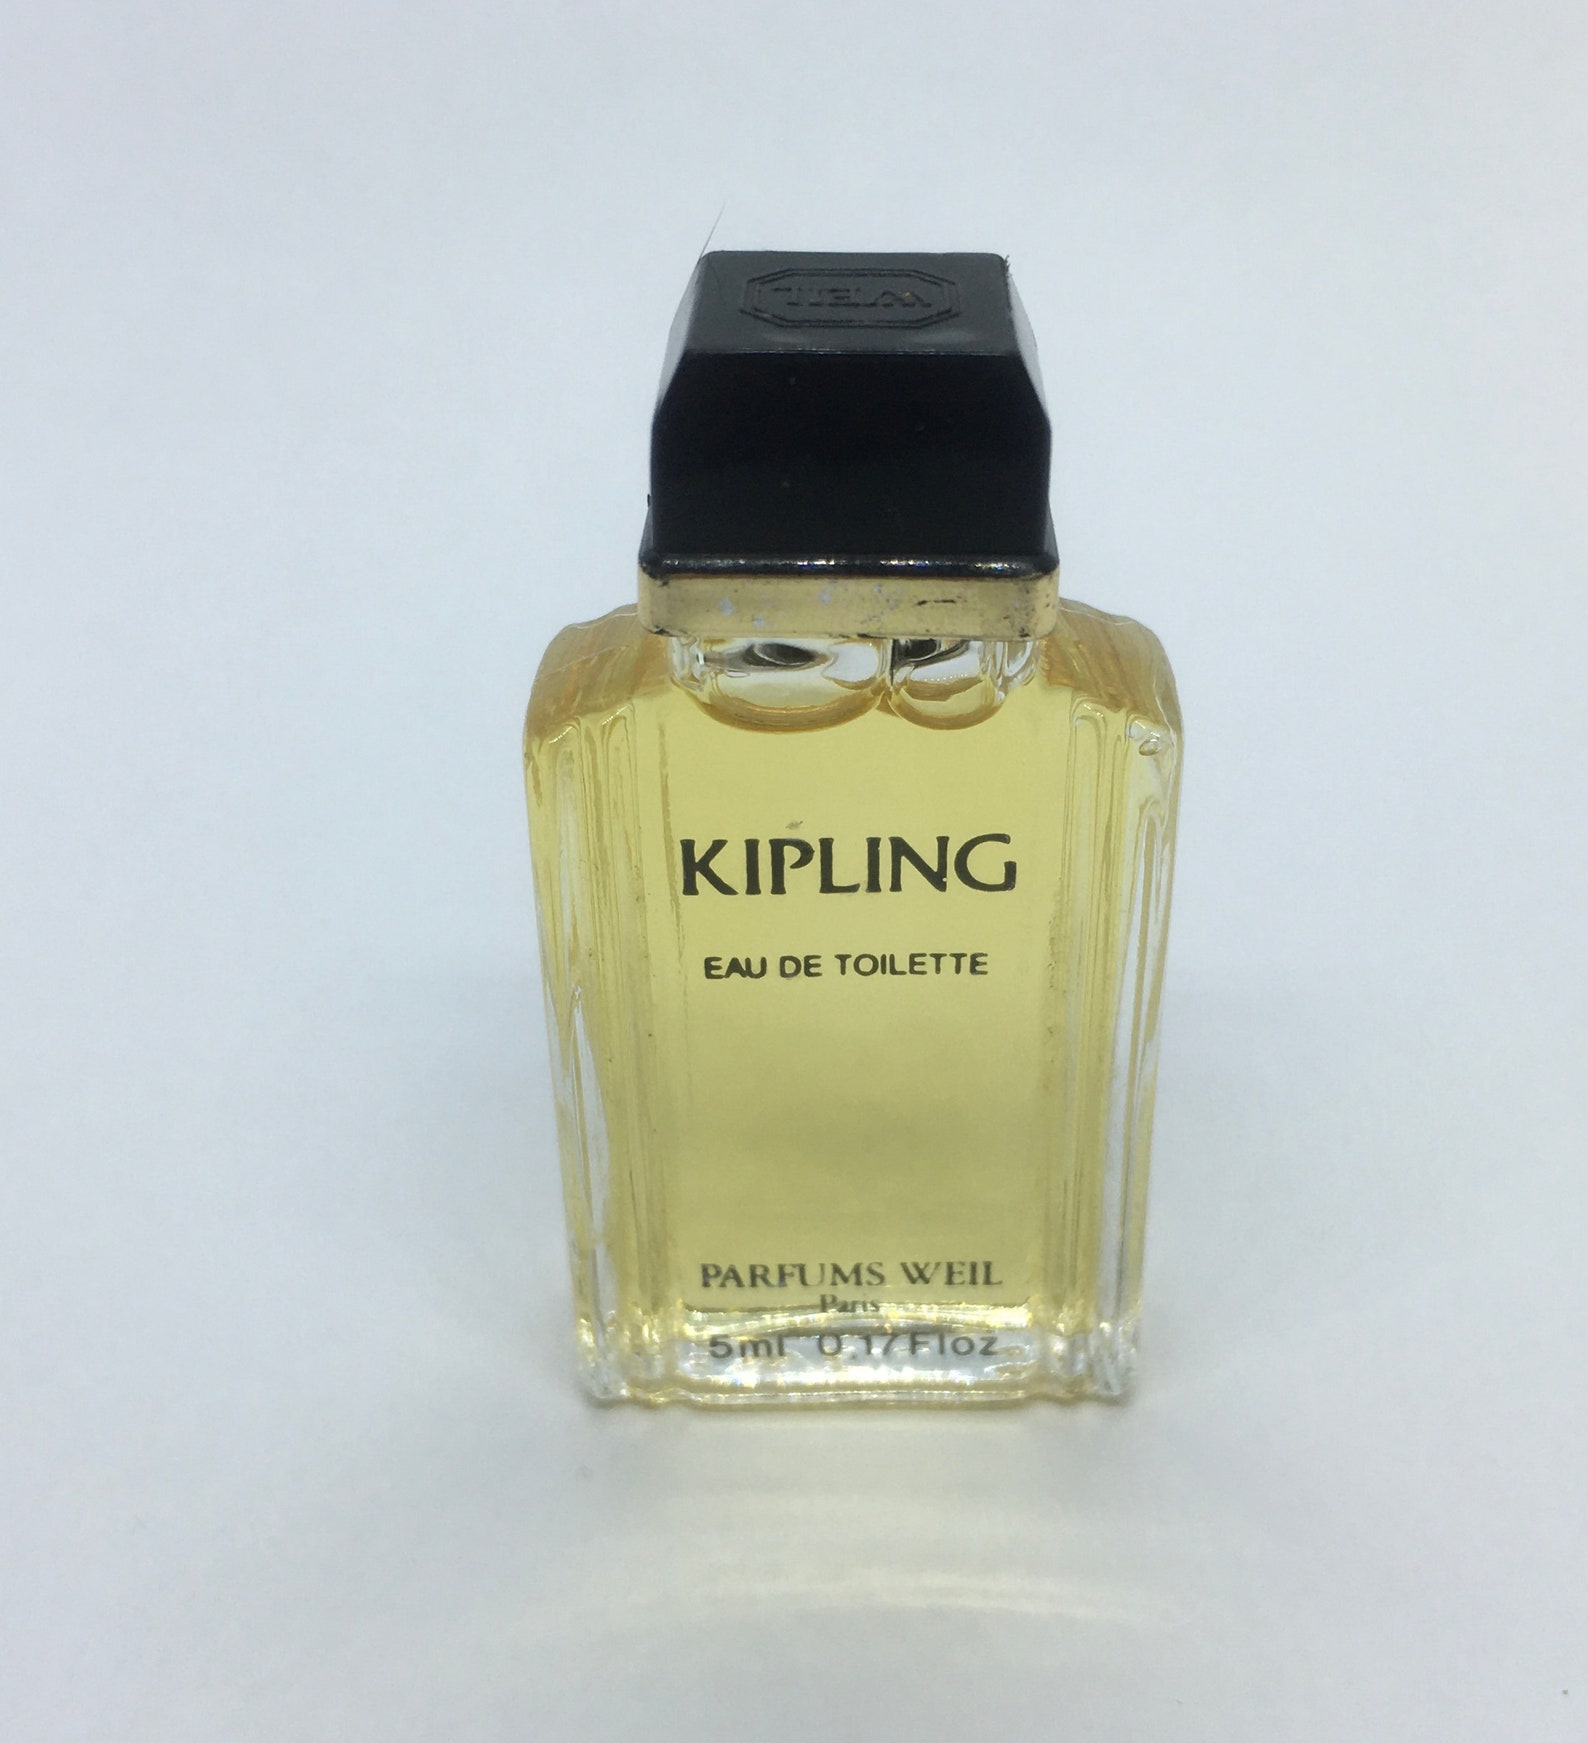 Kipling by Weil Eau de Toilette Miniature Perfume Profumo Mini | Etsy